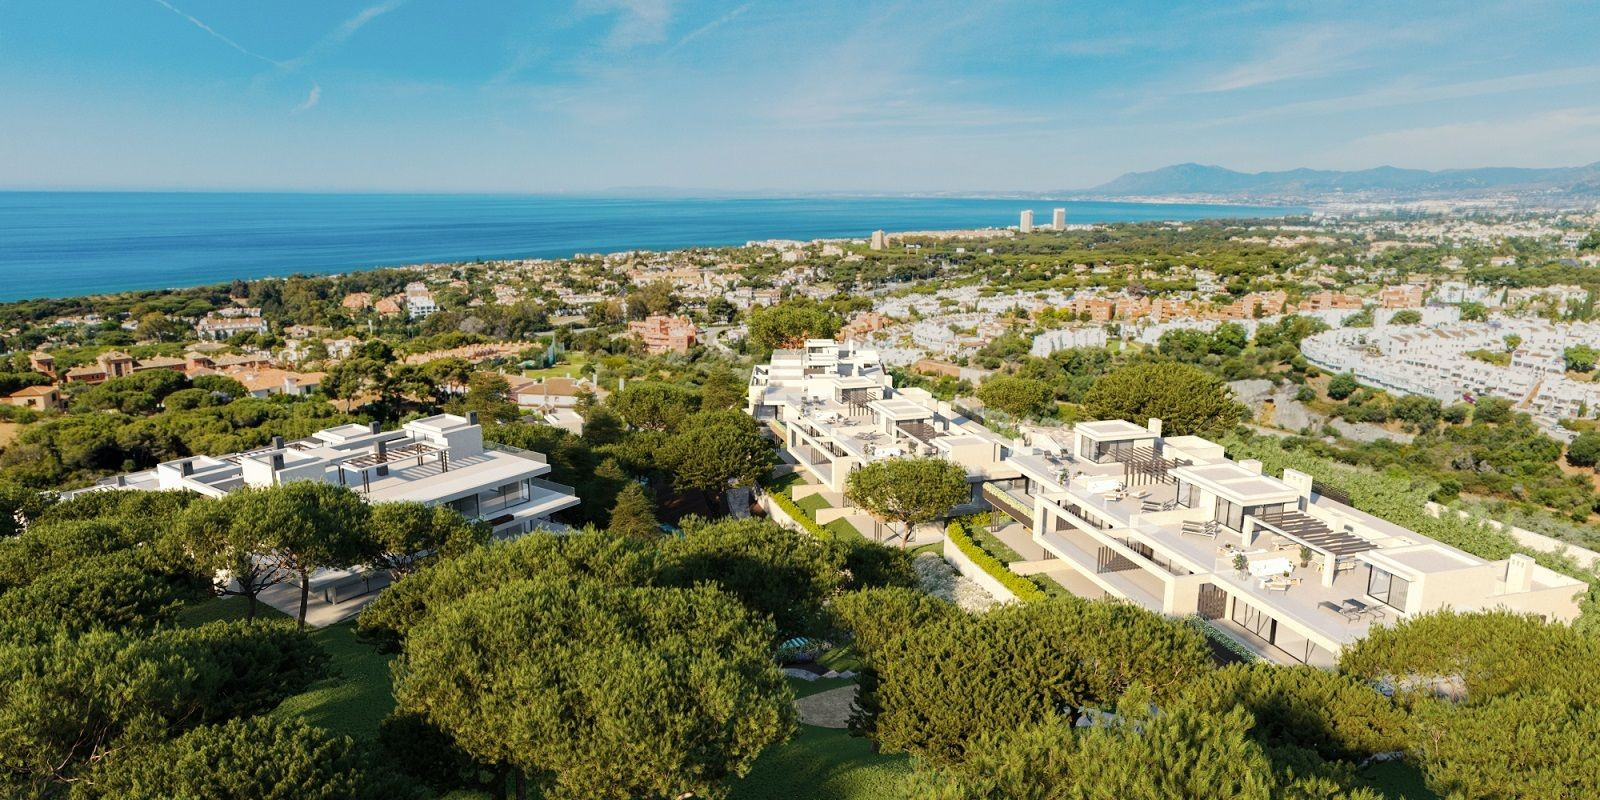 Appartementen met spectaculair uitzicht langs de kustlijn van Marbella.PL137